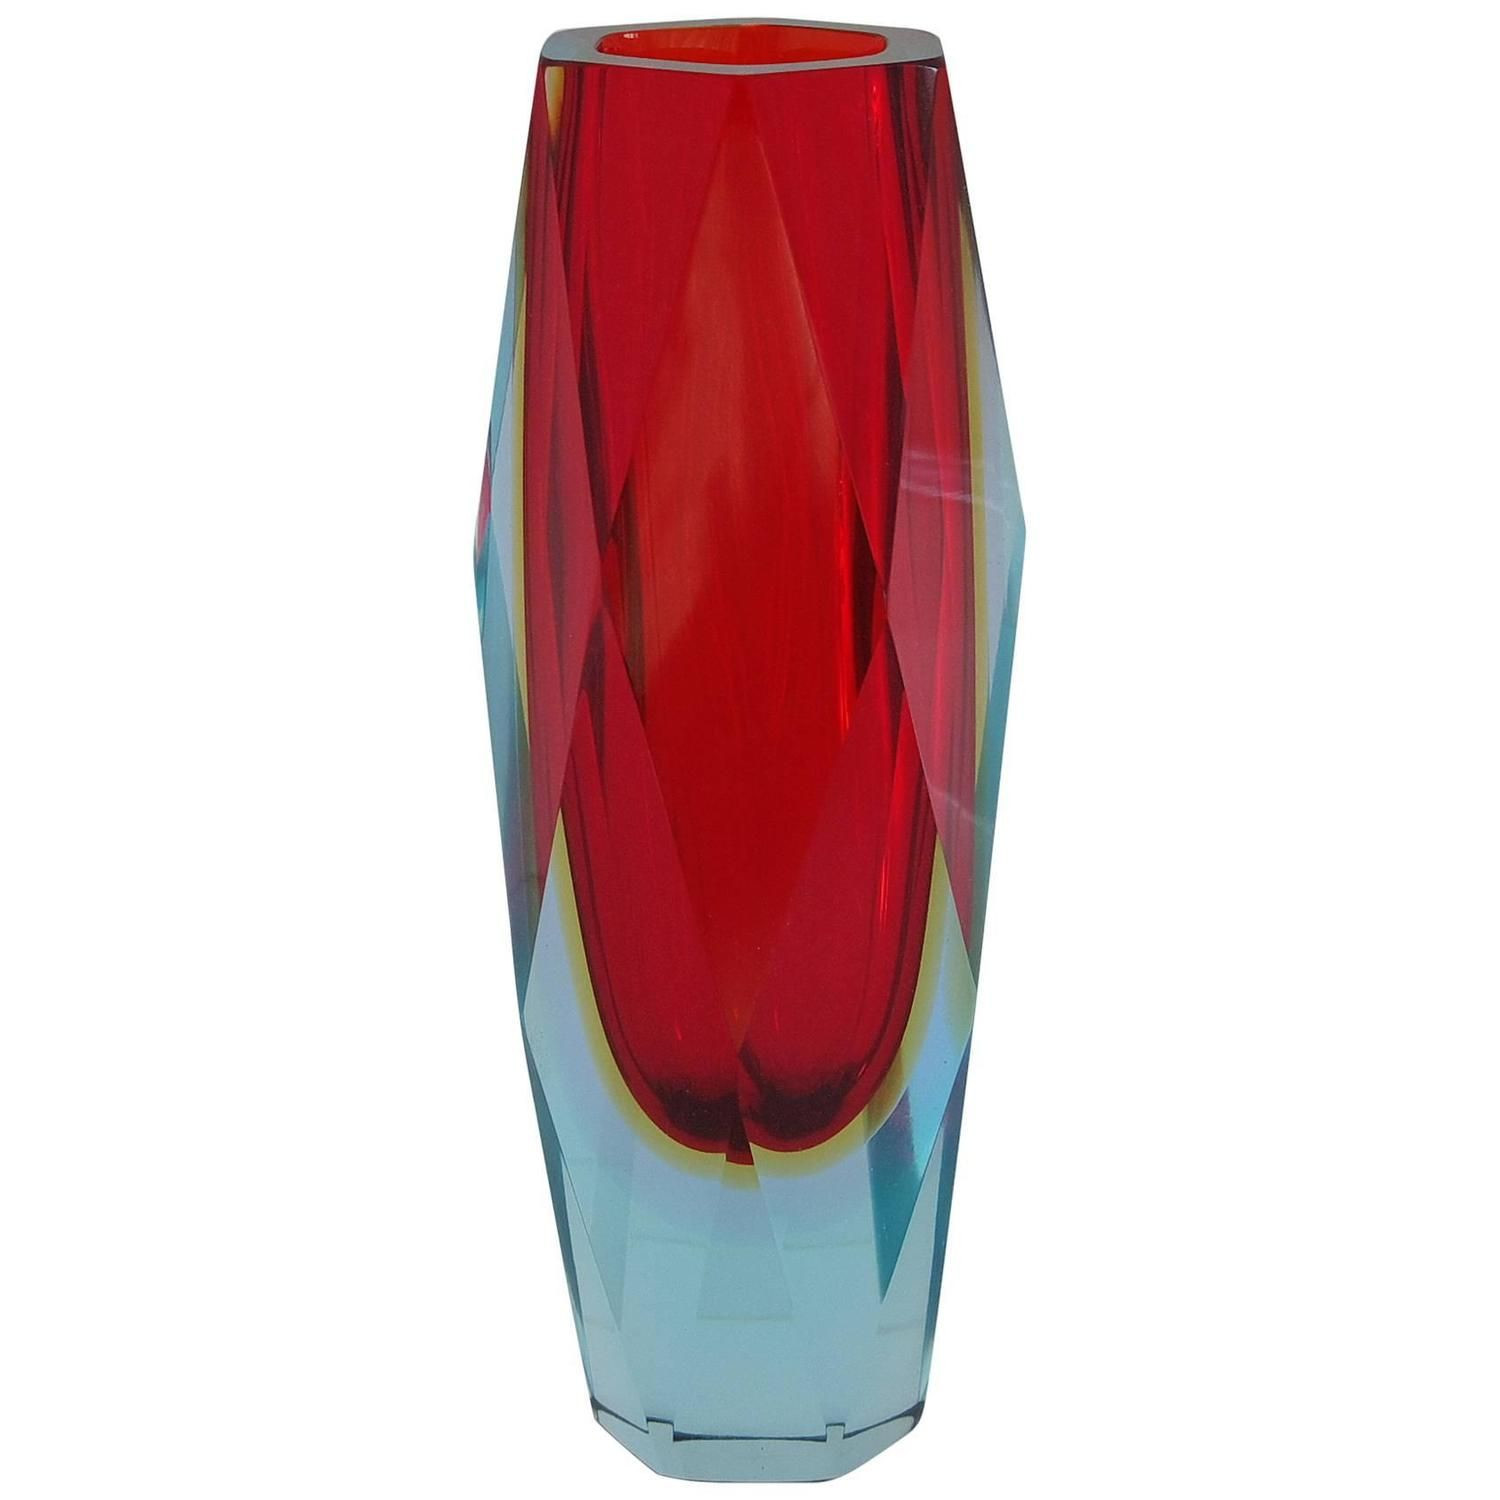 18 Elegant Black Murano Glass Vase 2024 free download black murano glass vase of italian murano glass red sommerso faceted vase by mandruzzato with cbf7eb5c1906fd14ce2e94a9bb788f26